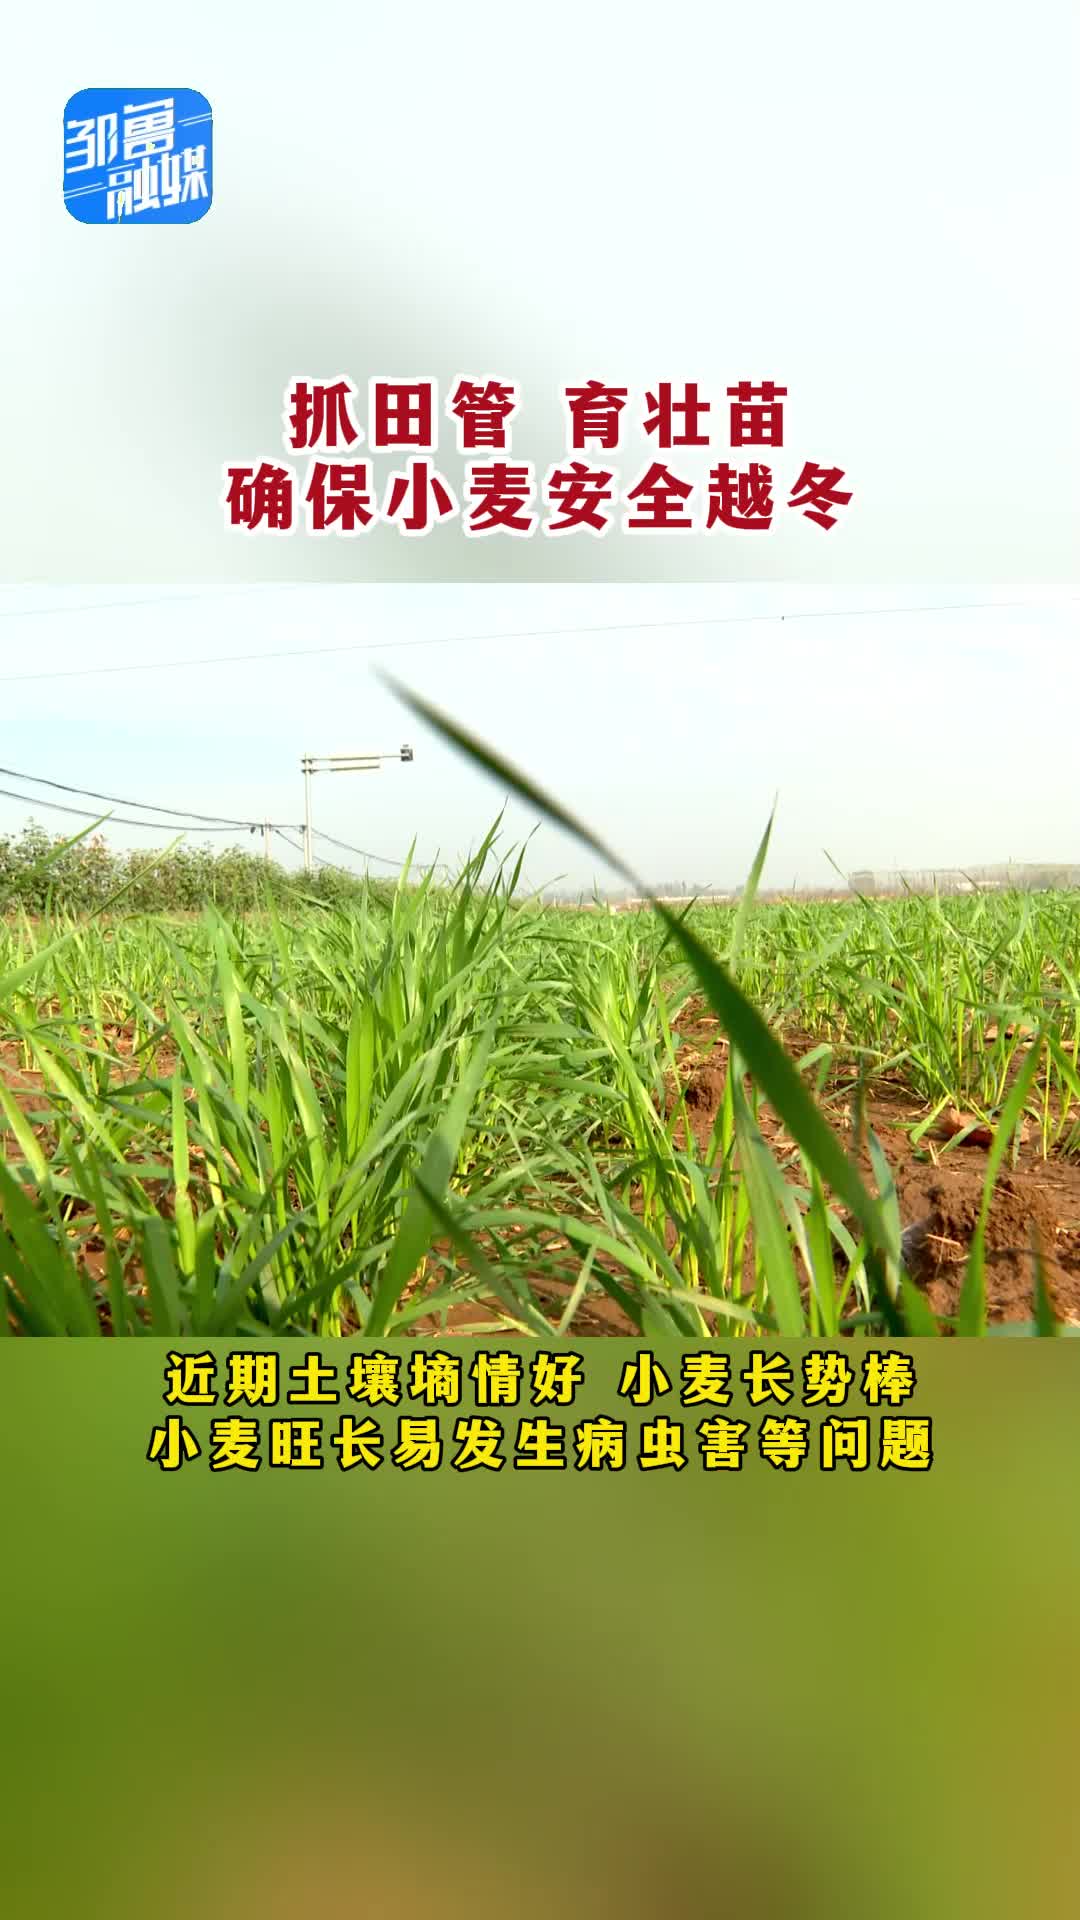 【邹视频·新闻】34秒|抓田管育壮苗 确保小麦安全越冬